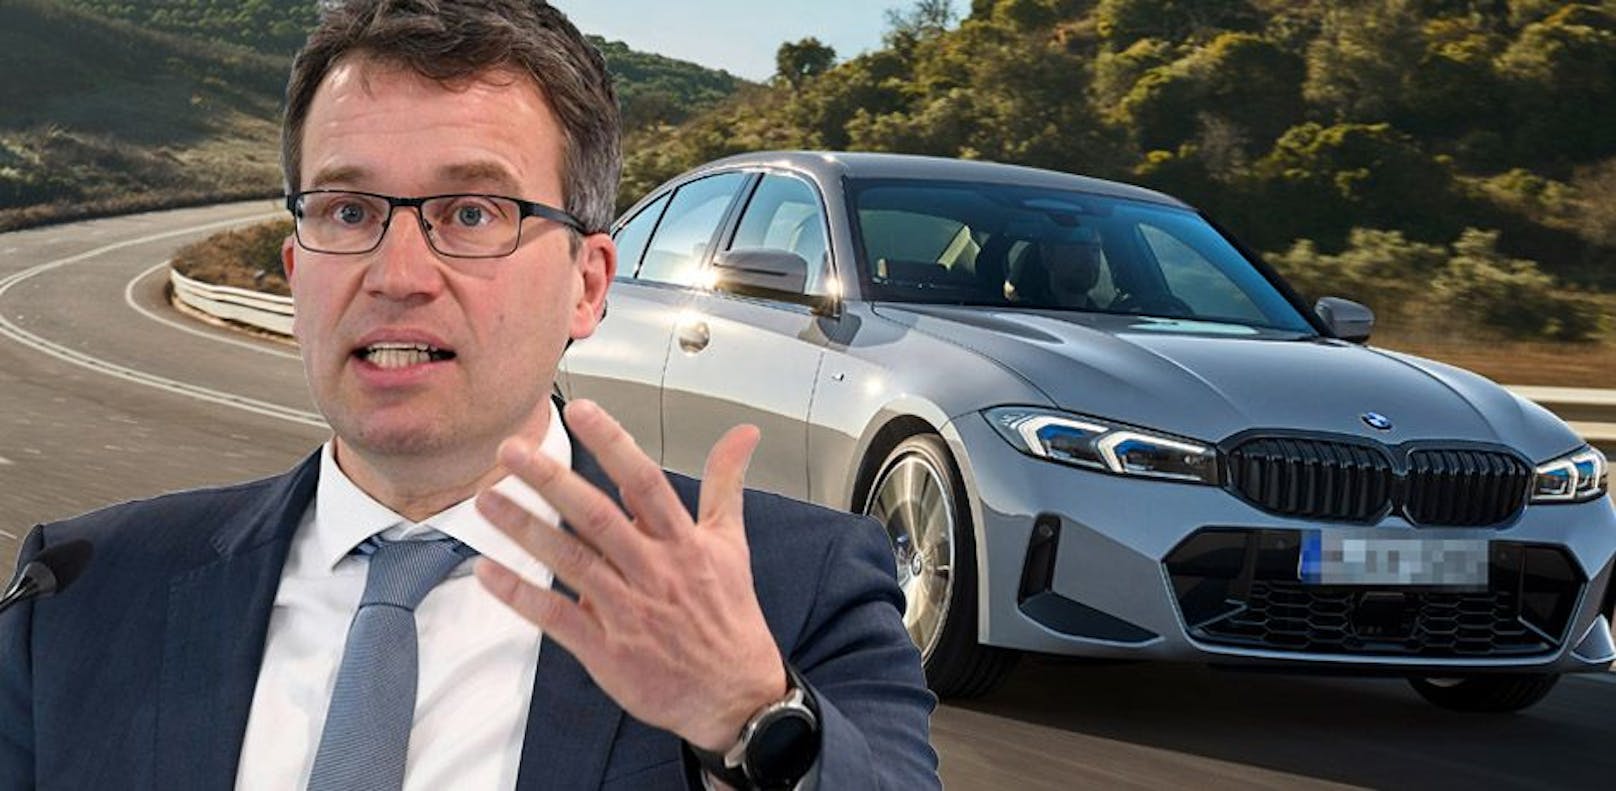 "Früher reichten ein 3er-BMW und ein Laptop. Das zählt heute wenig", erklärt AMS-Chef Kopf.